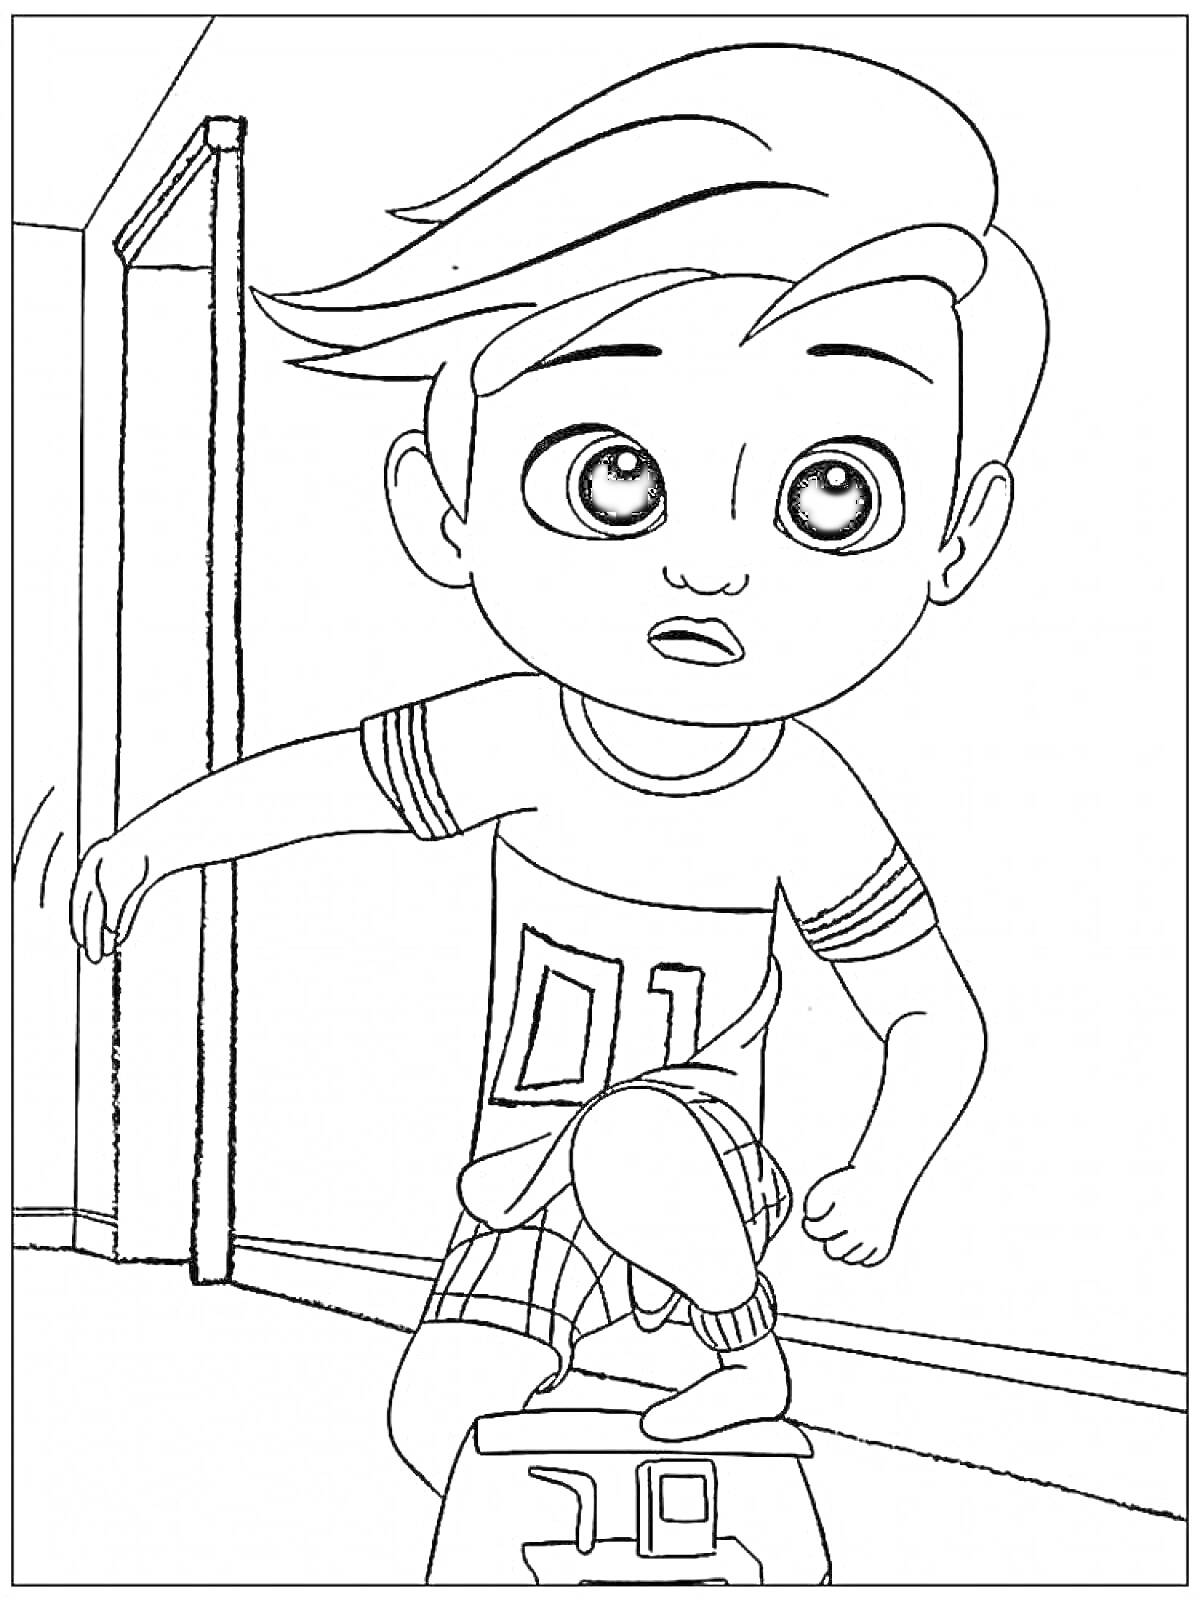 Раскраска Мальчик с прической и футболкой с номером 01 прыгает через коробку у открытой двери